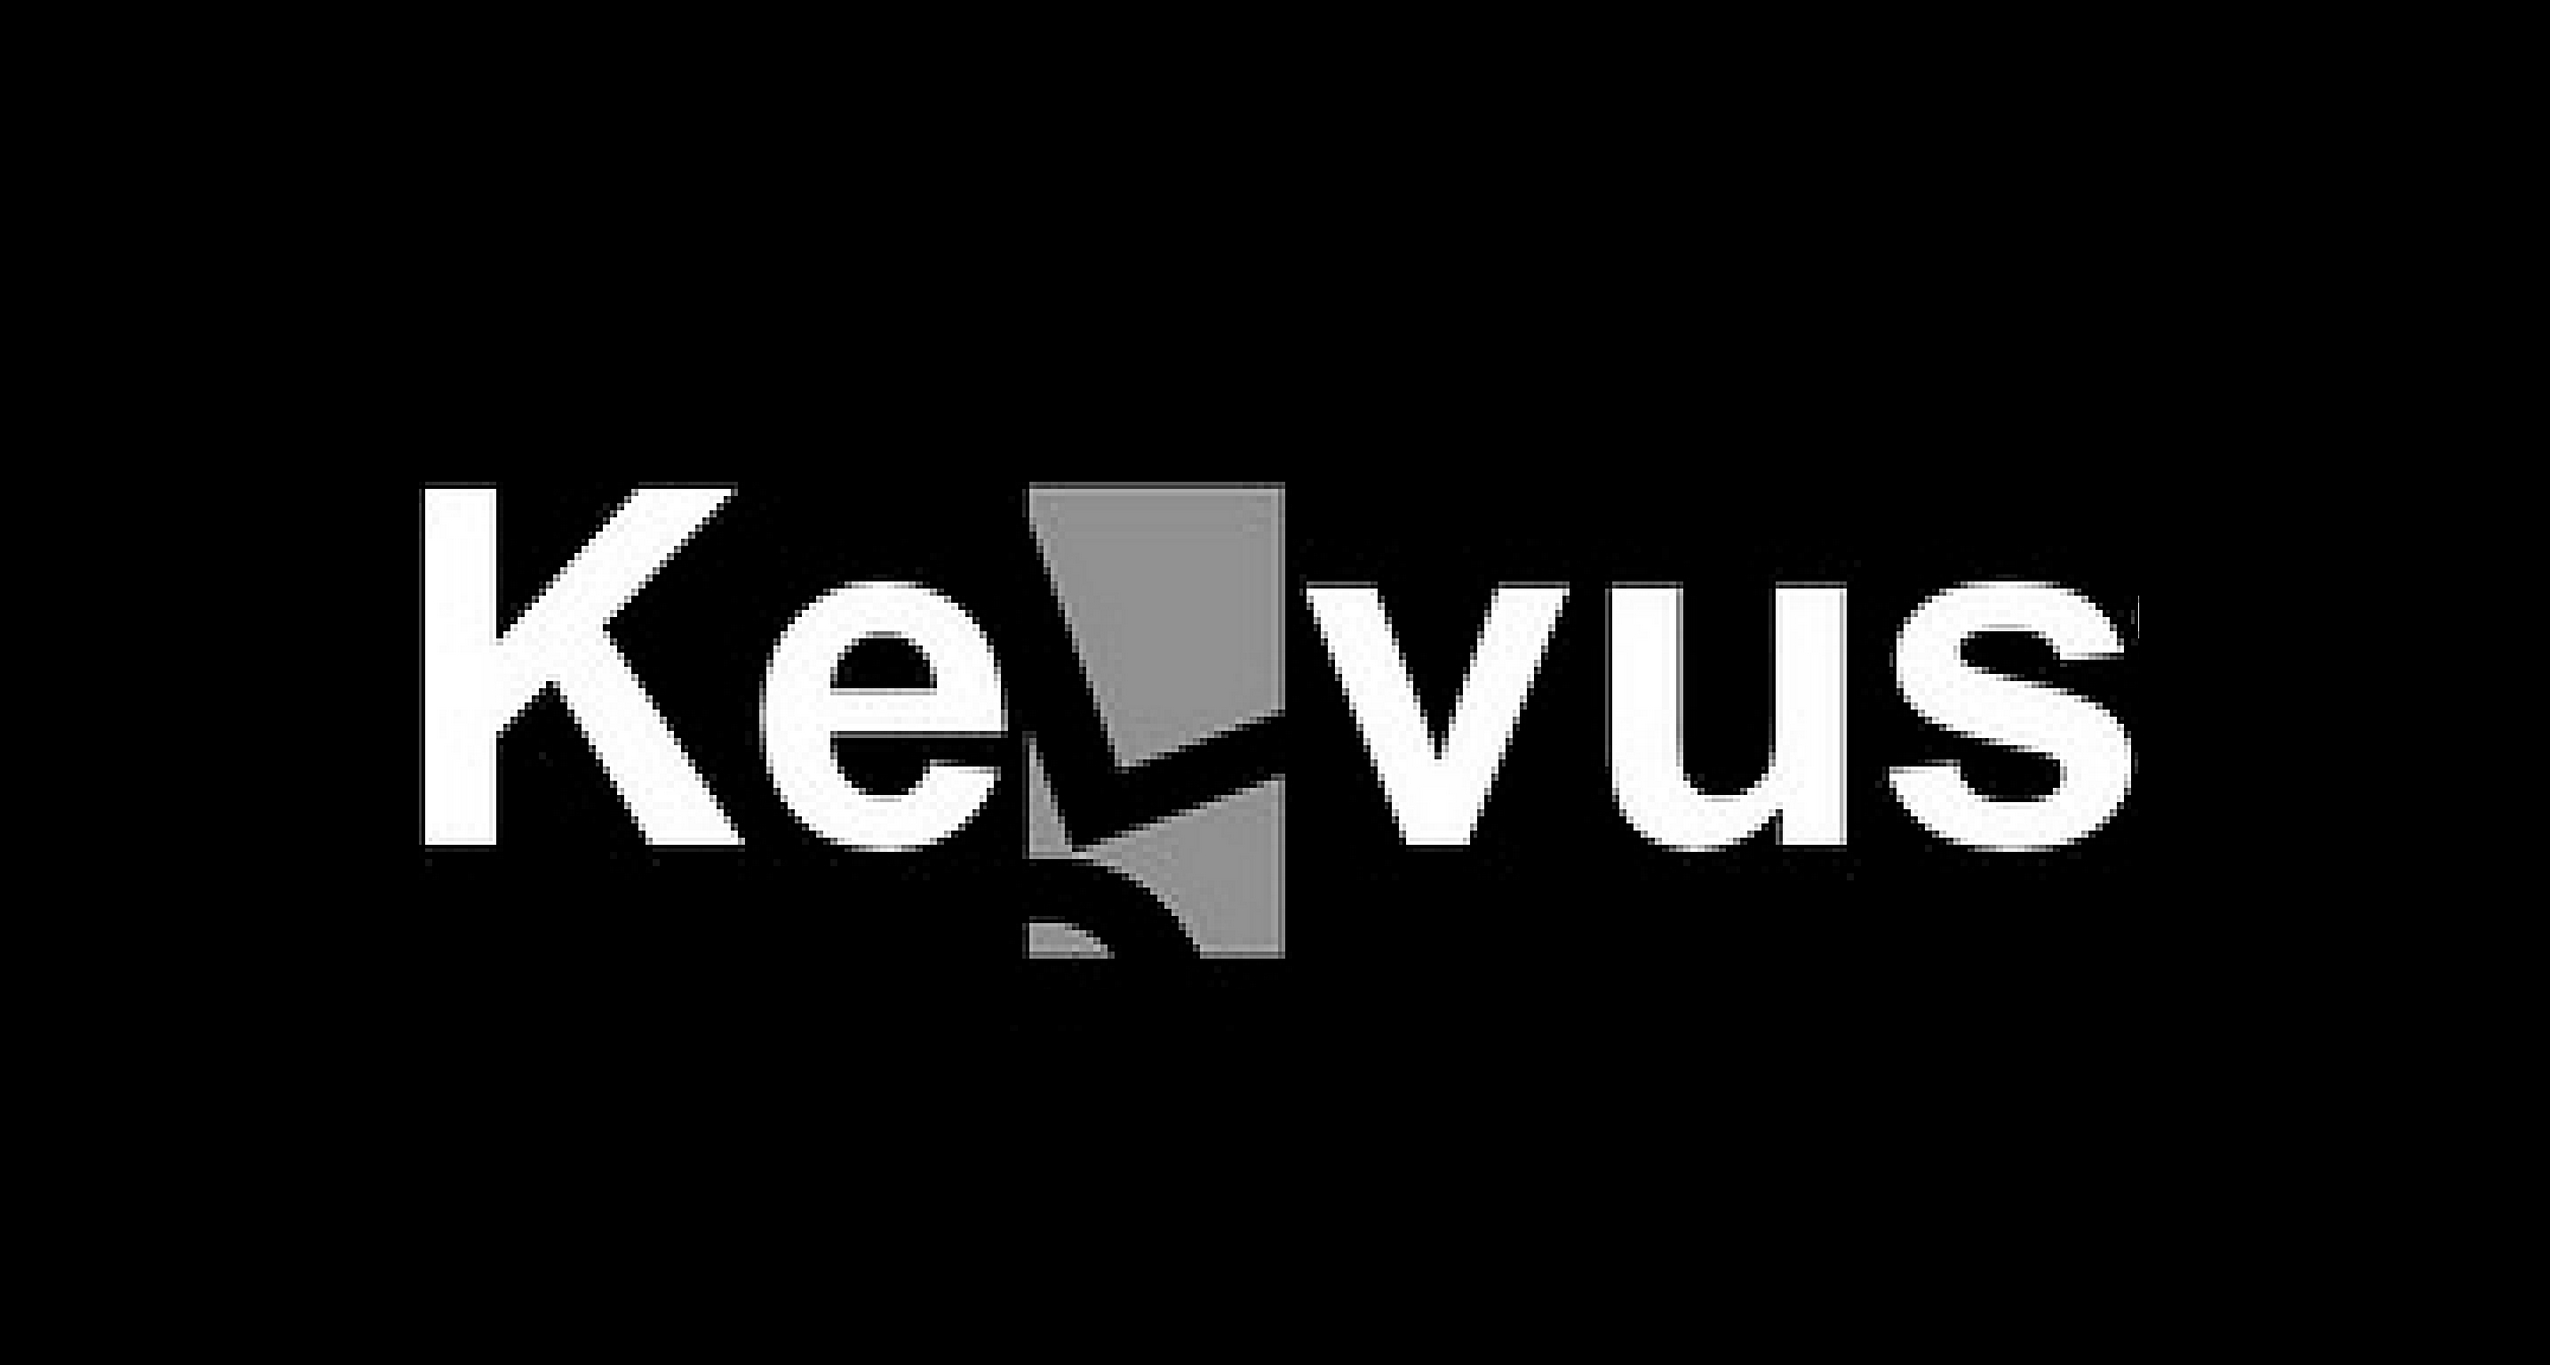 Kelvus - Keepinweb.com